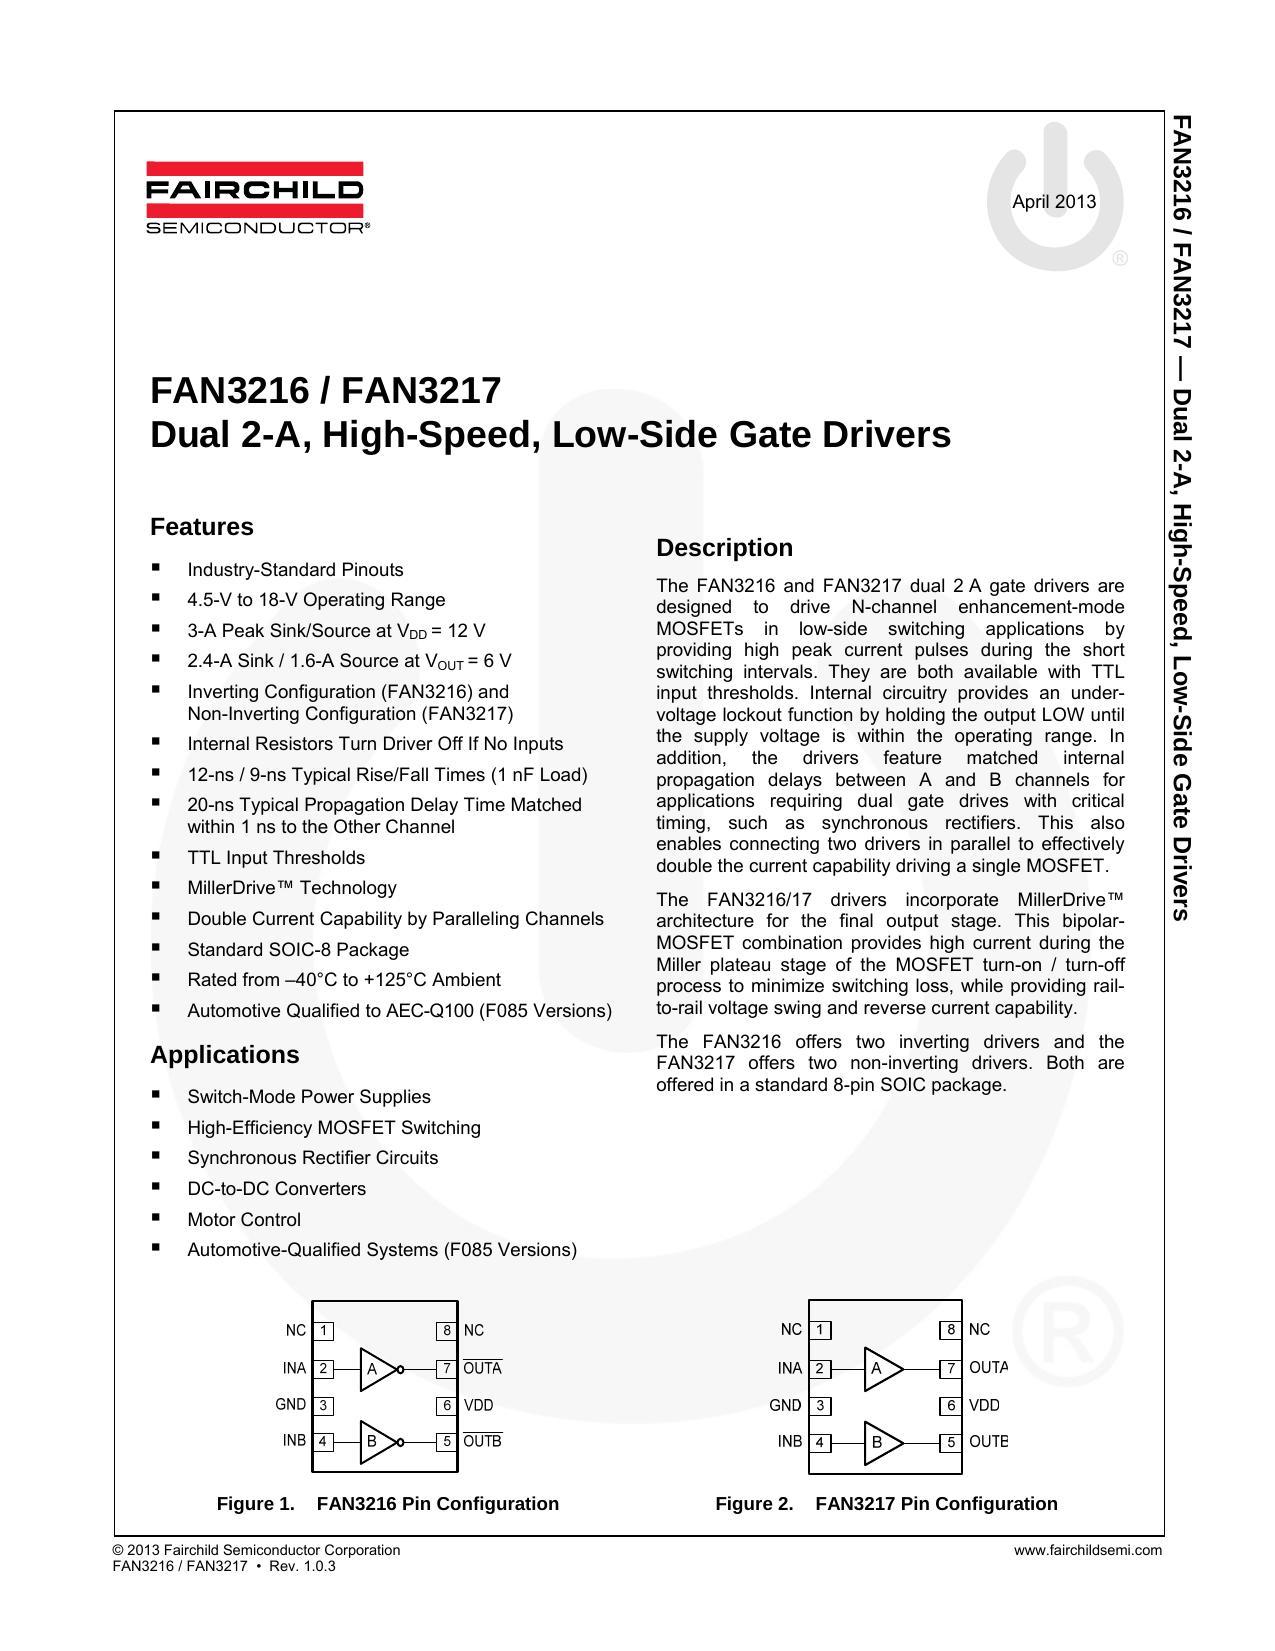 fan3216fan3217-dual-2-a-high-speed-low-side-gate-drivers.pdf